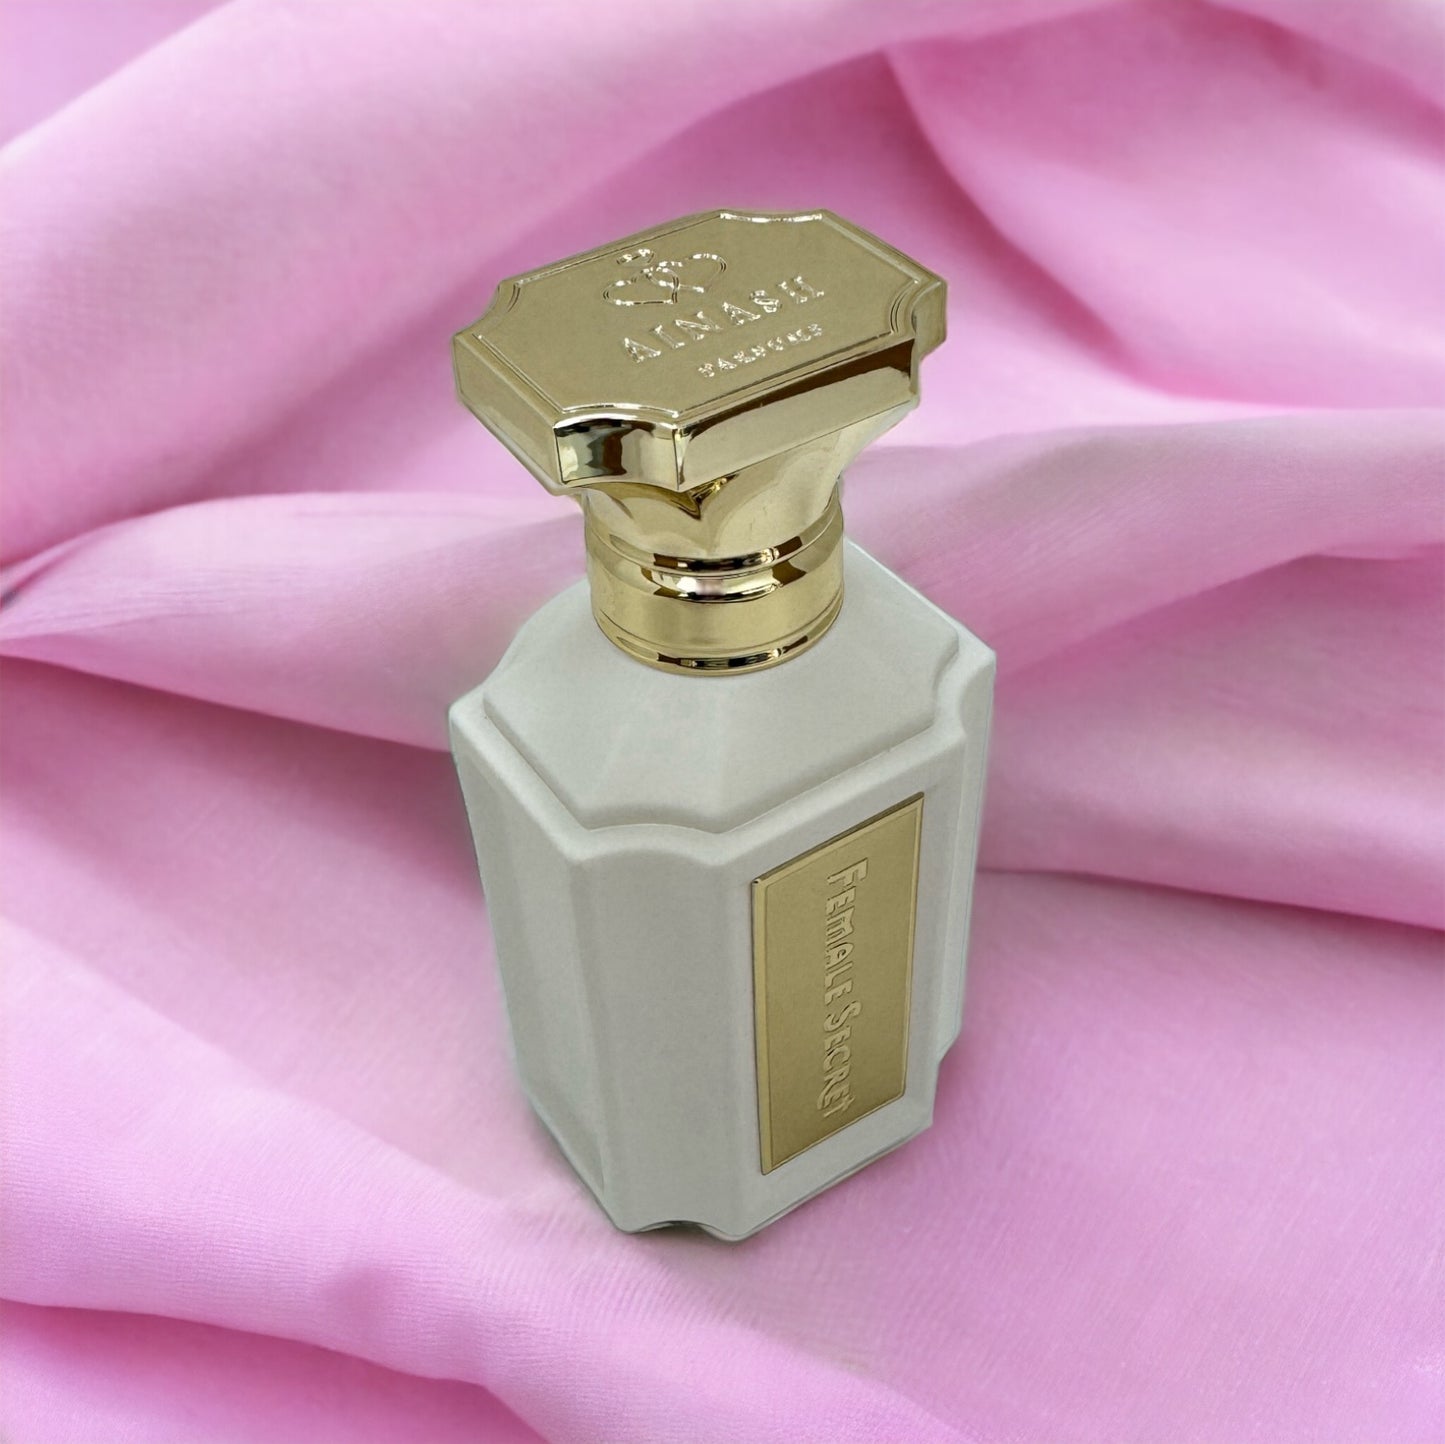 Female Secret by Ainash Parfums